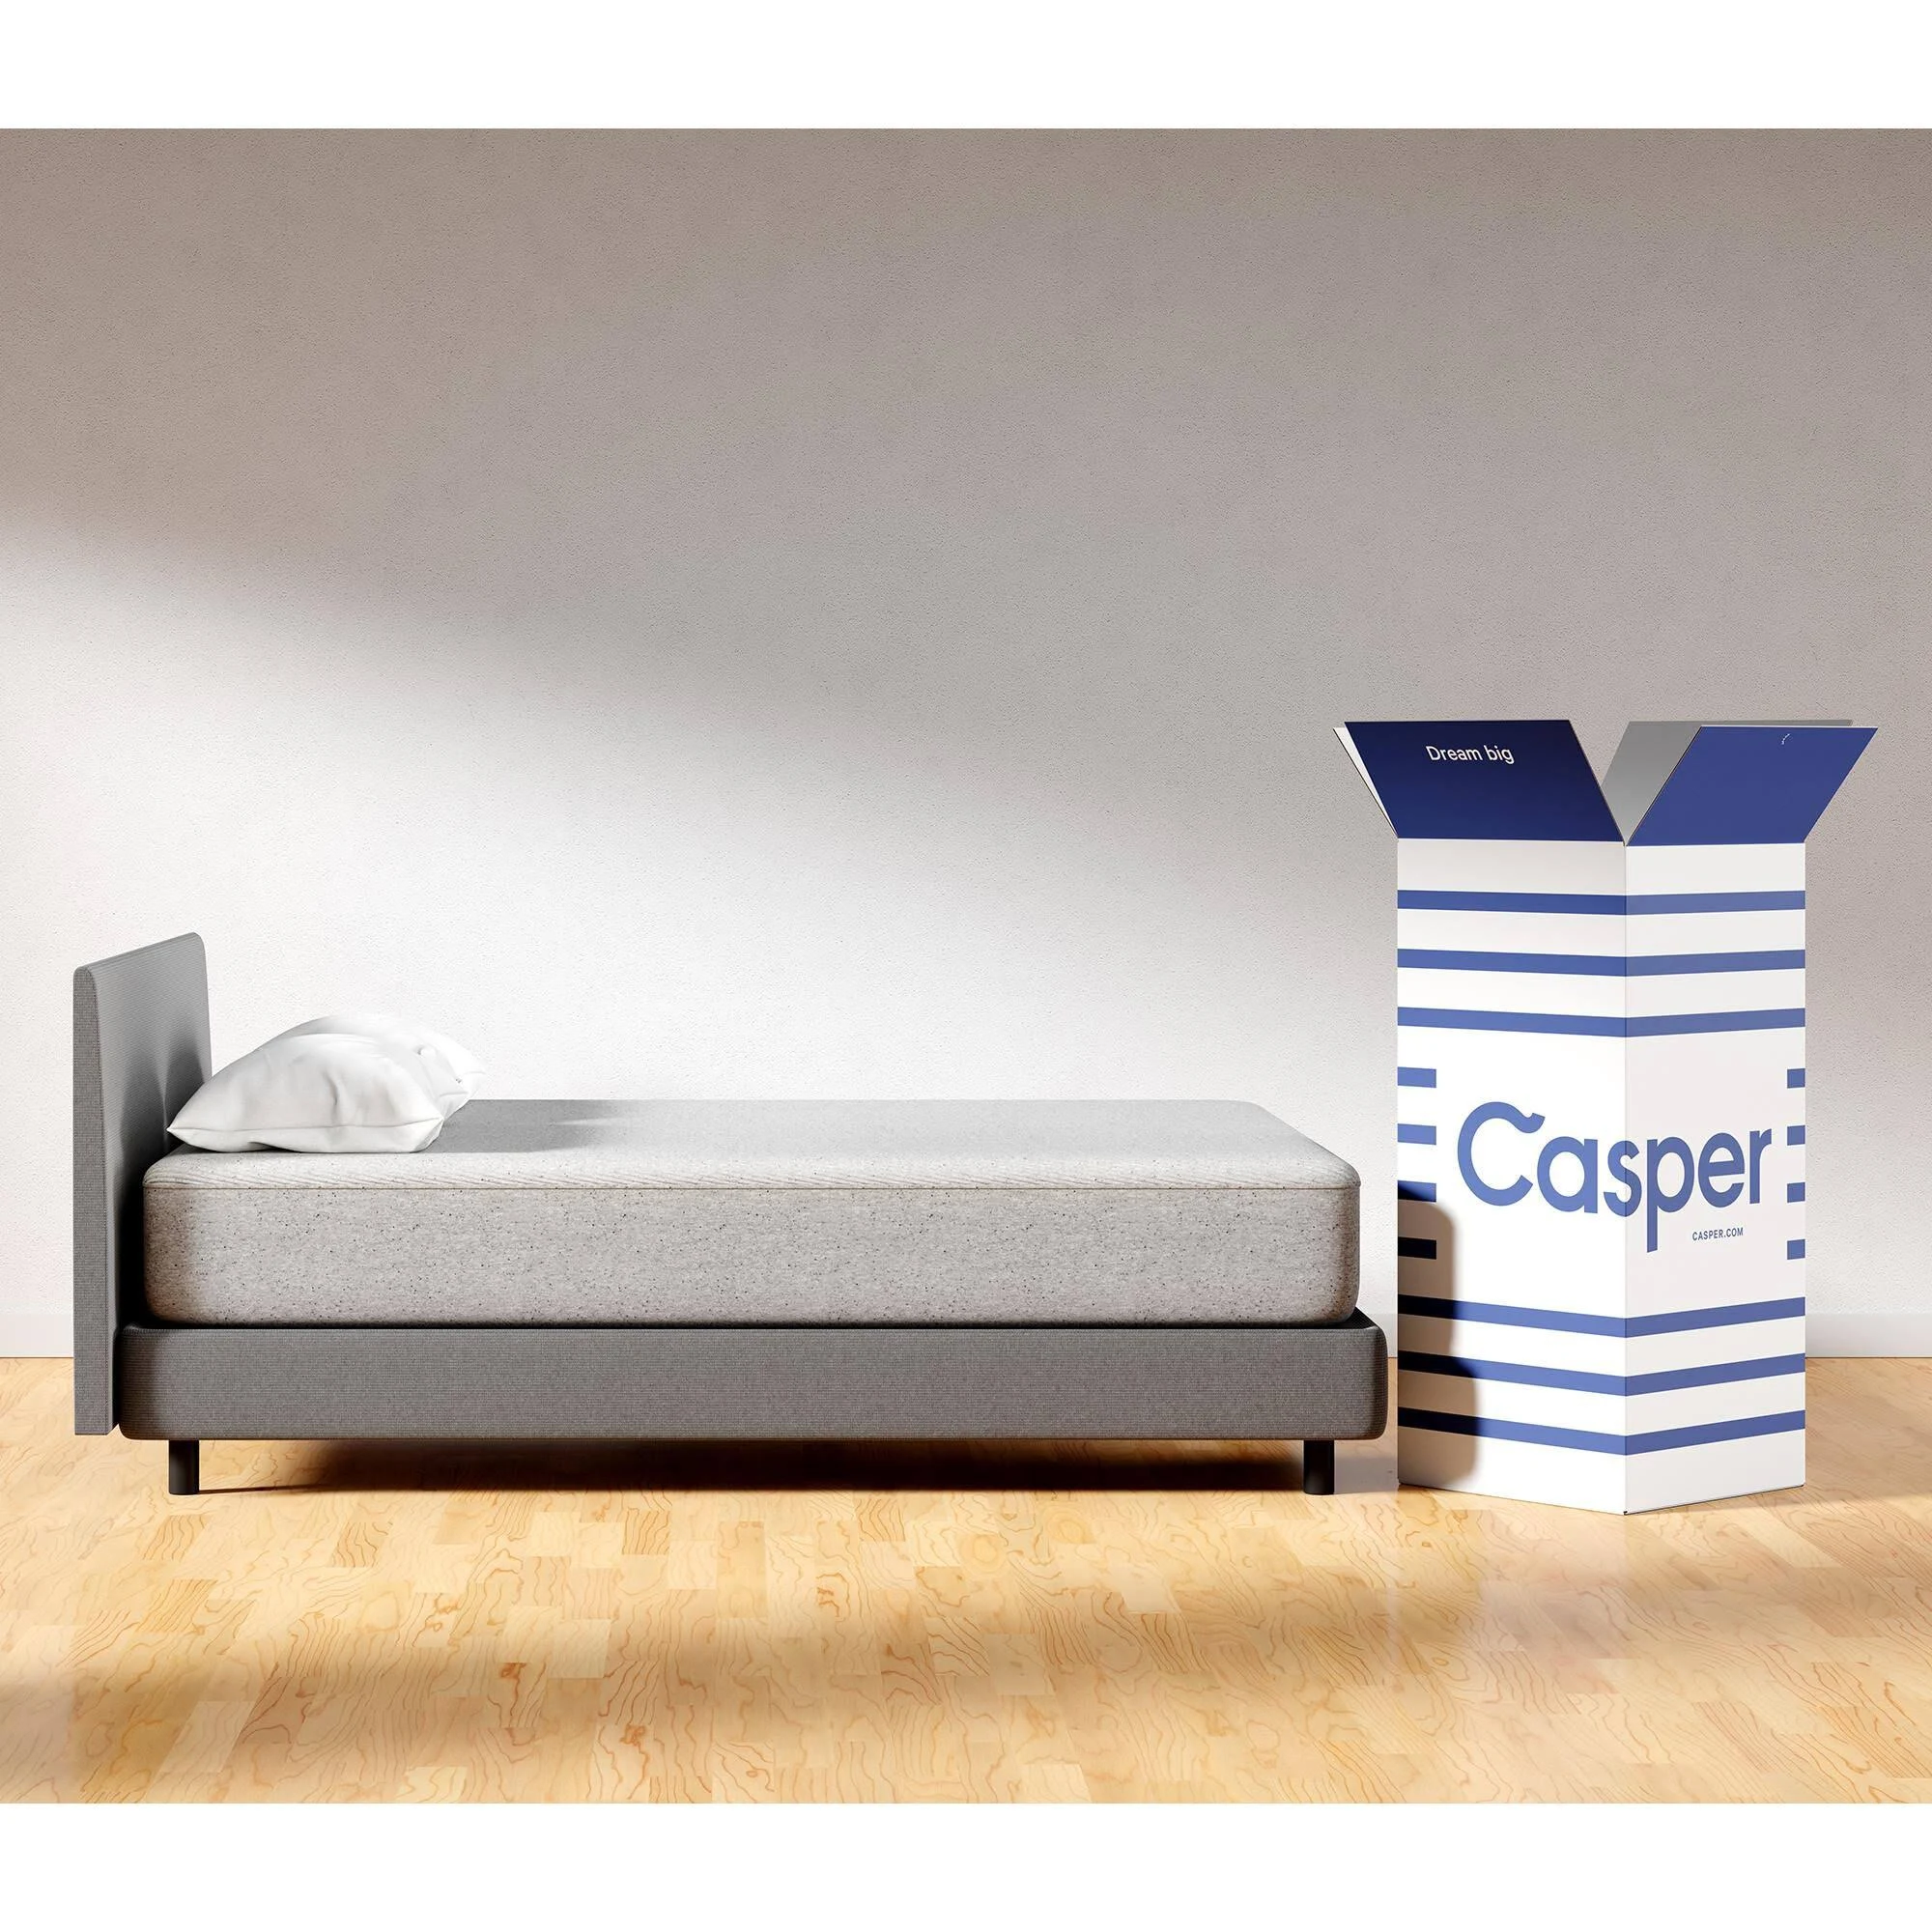 Casper Original Foam Mattress, Twin